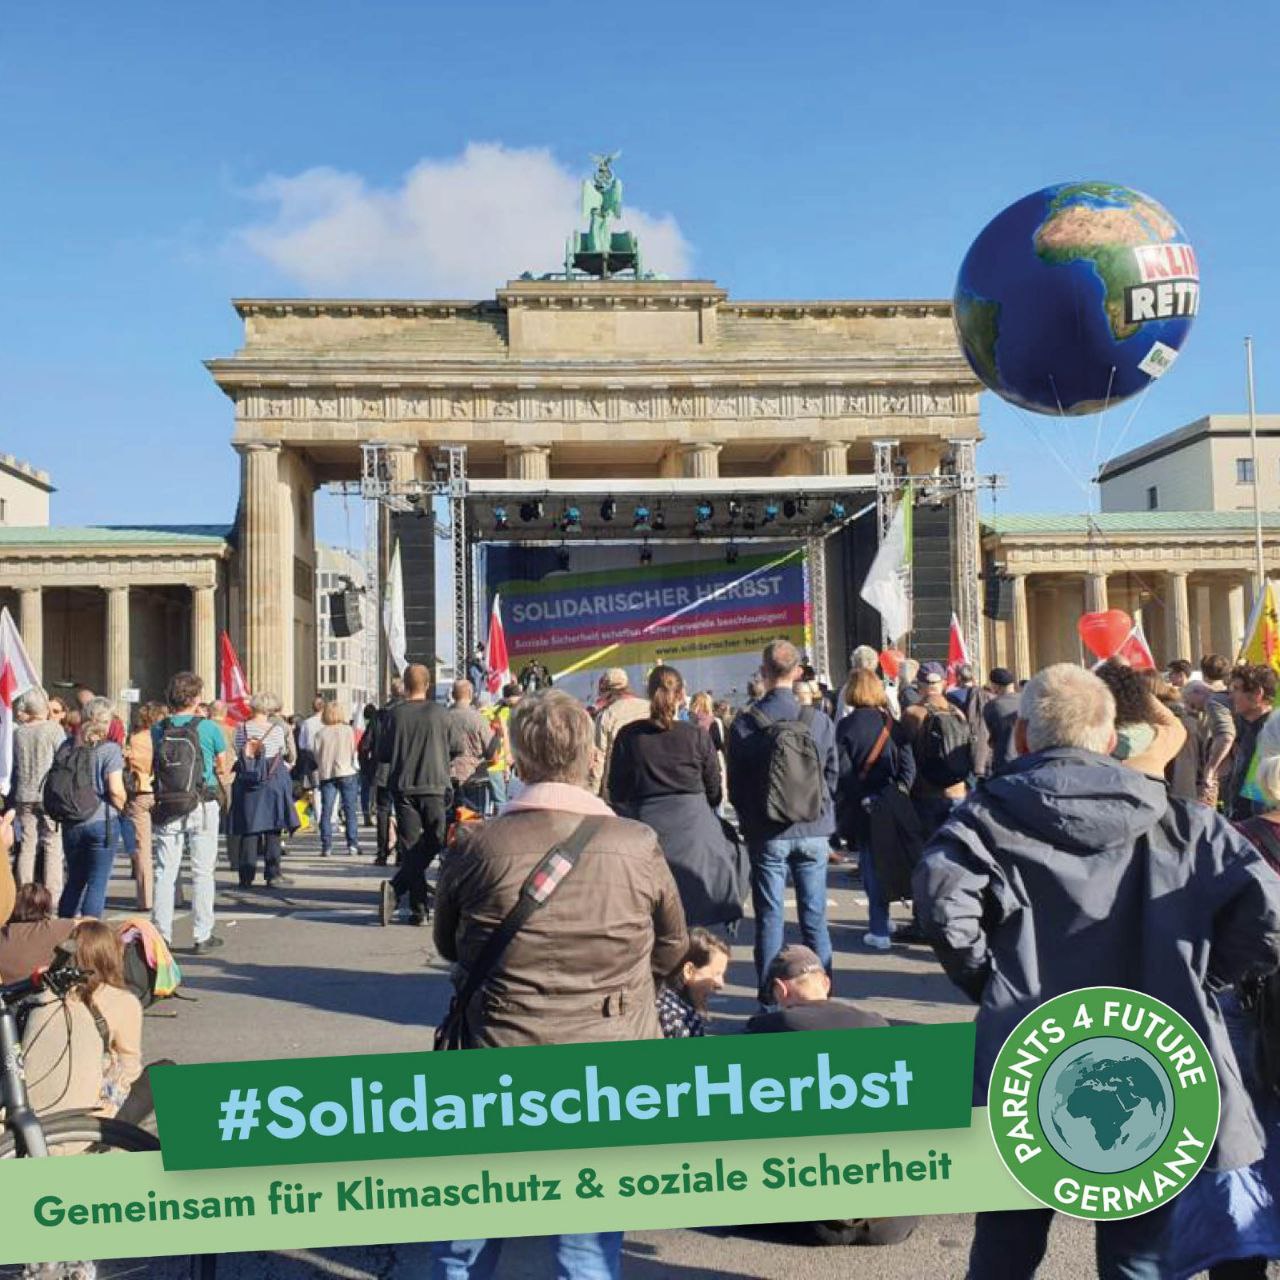 Solidarischer Herbst - Demo in Berlin